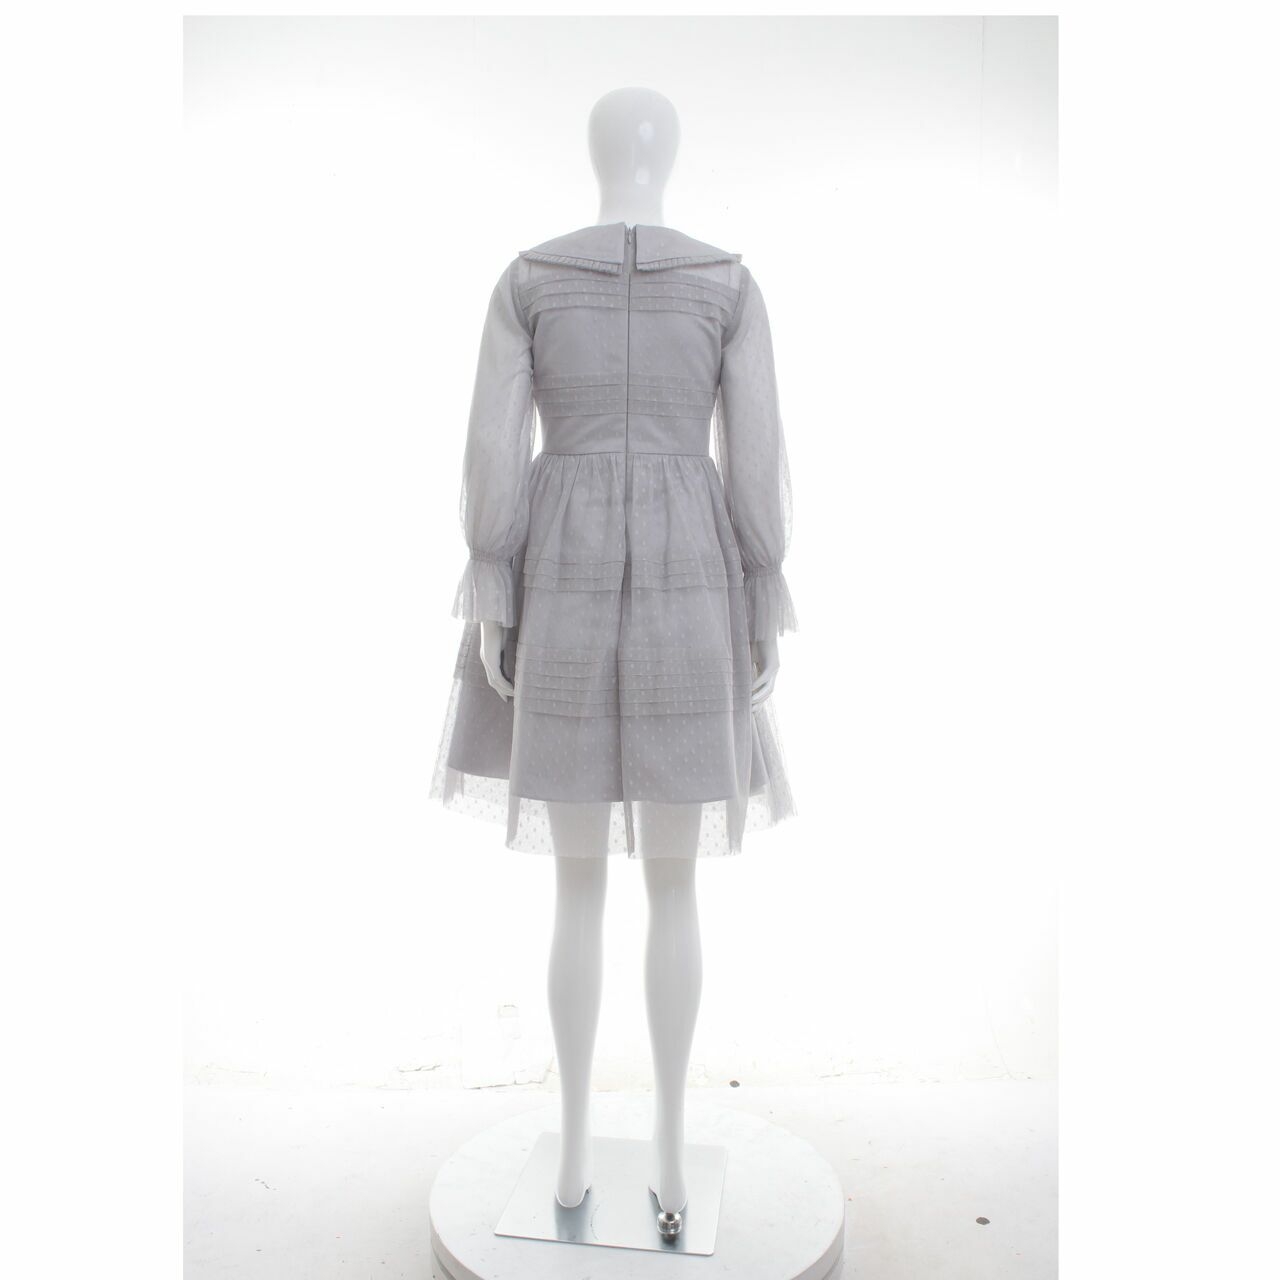 Poshture Grey Mini Dress